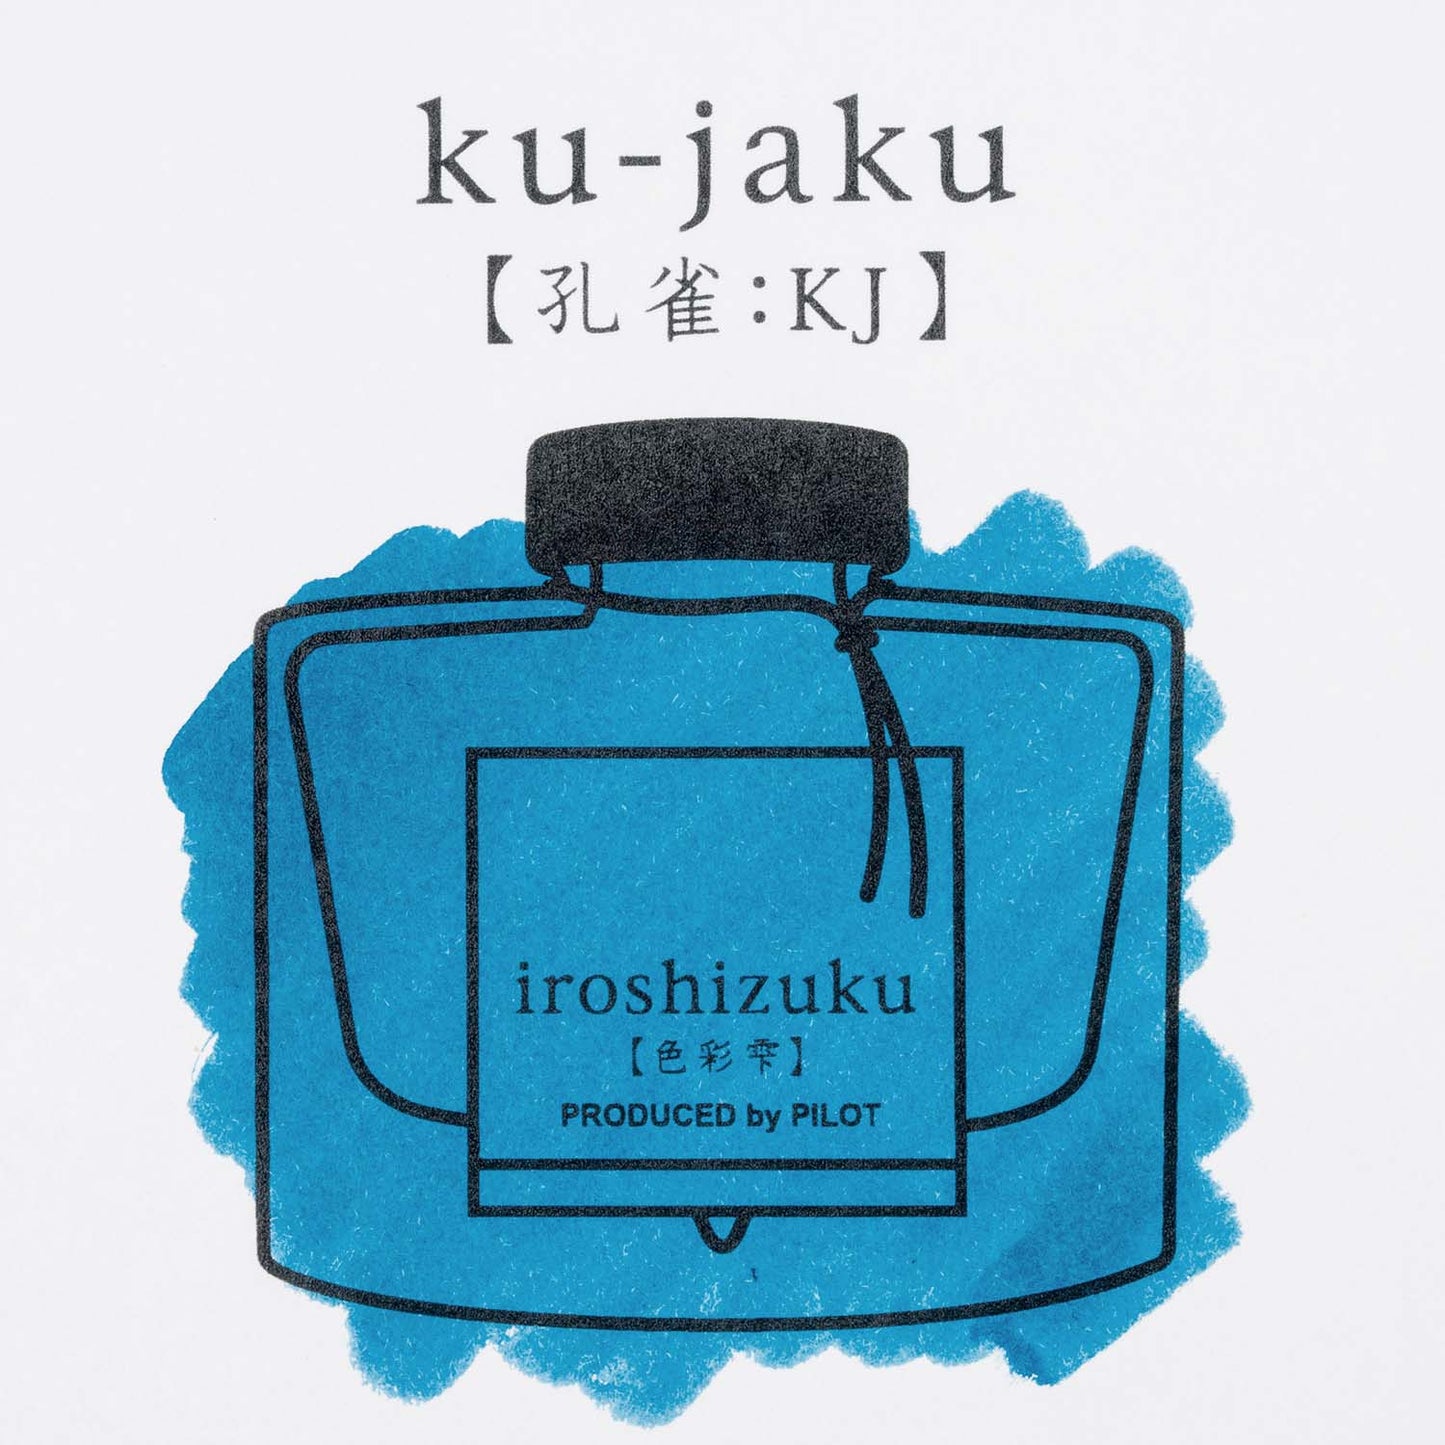 Pilot Iroshizuku Fountain Pen Ink Cartridges - Ku-Jaku (Peacock) sample